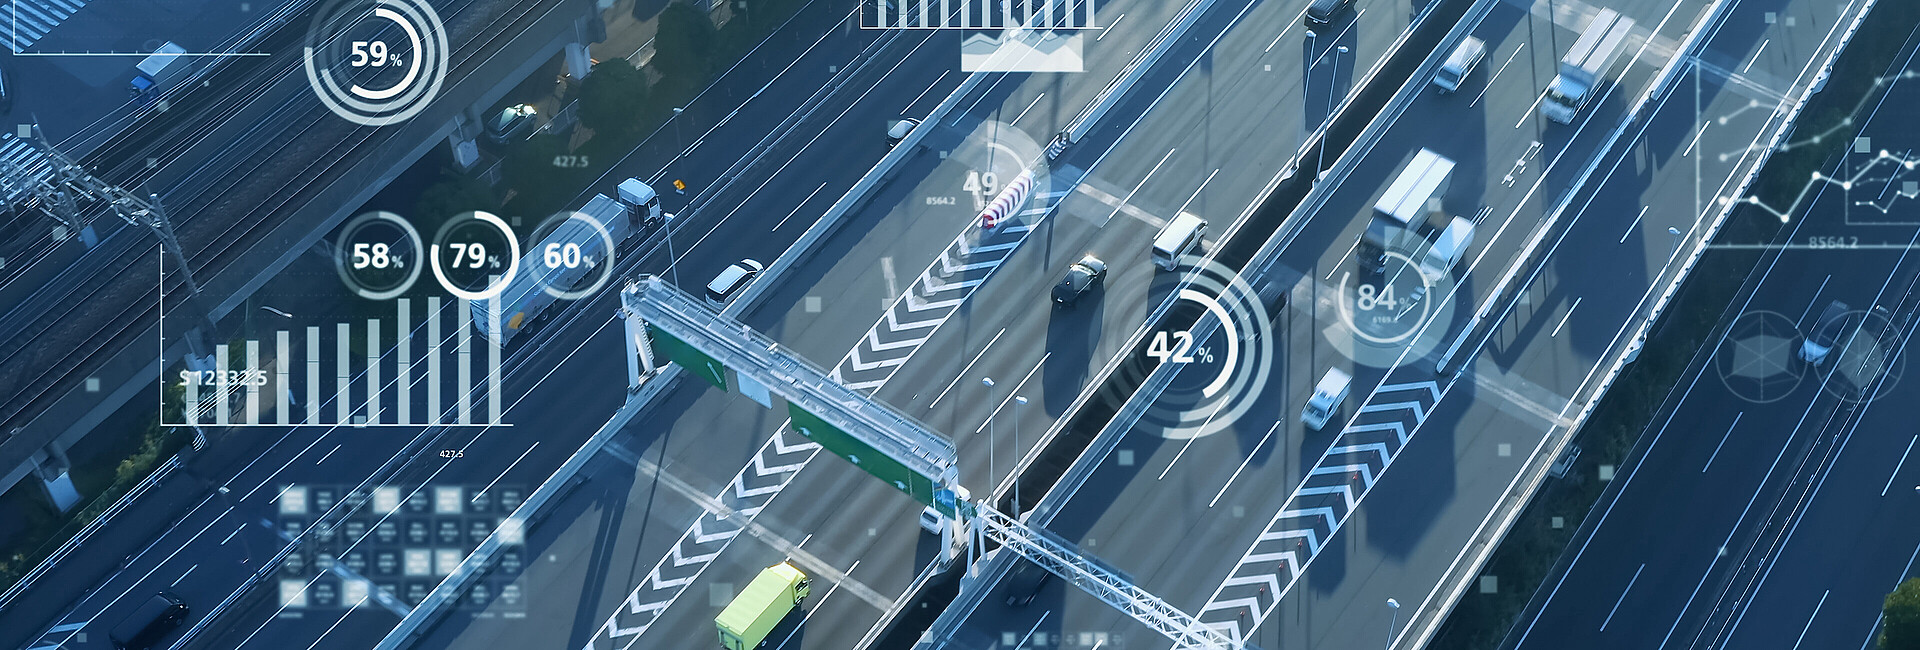 Luftbild eines Straßennetzes mit verschiedenen Zahlen